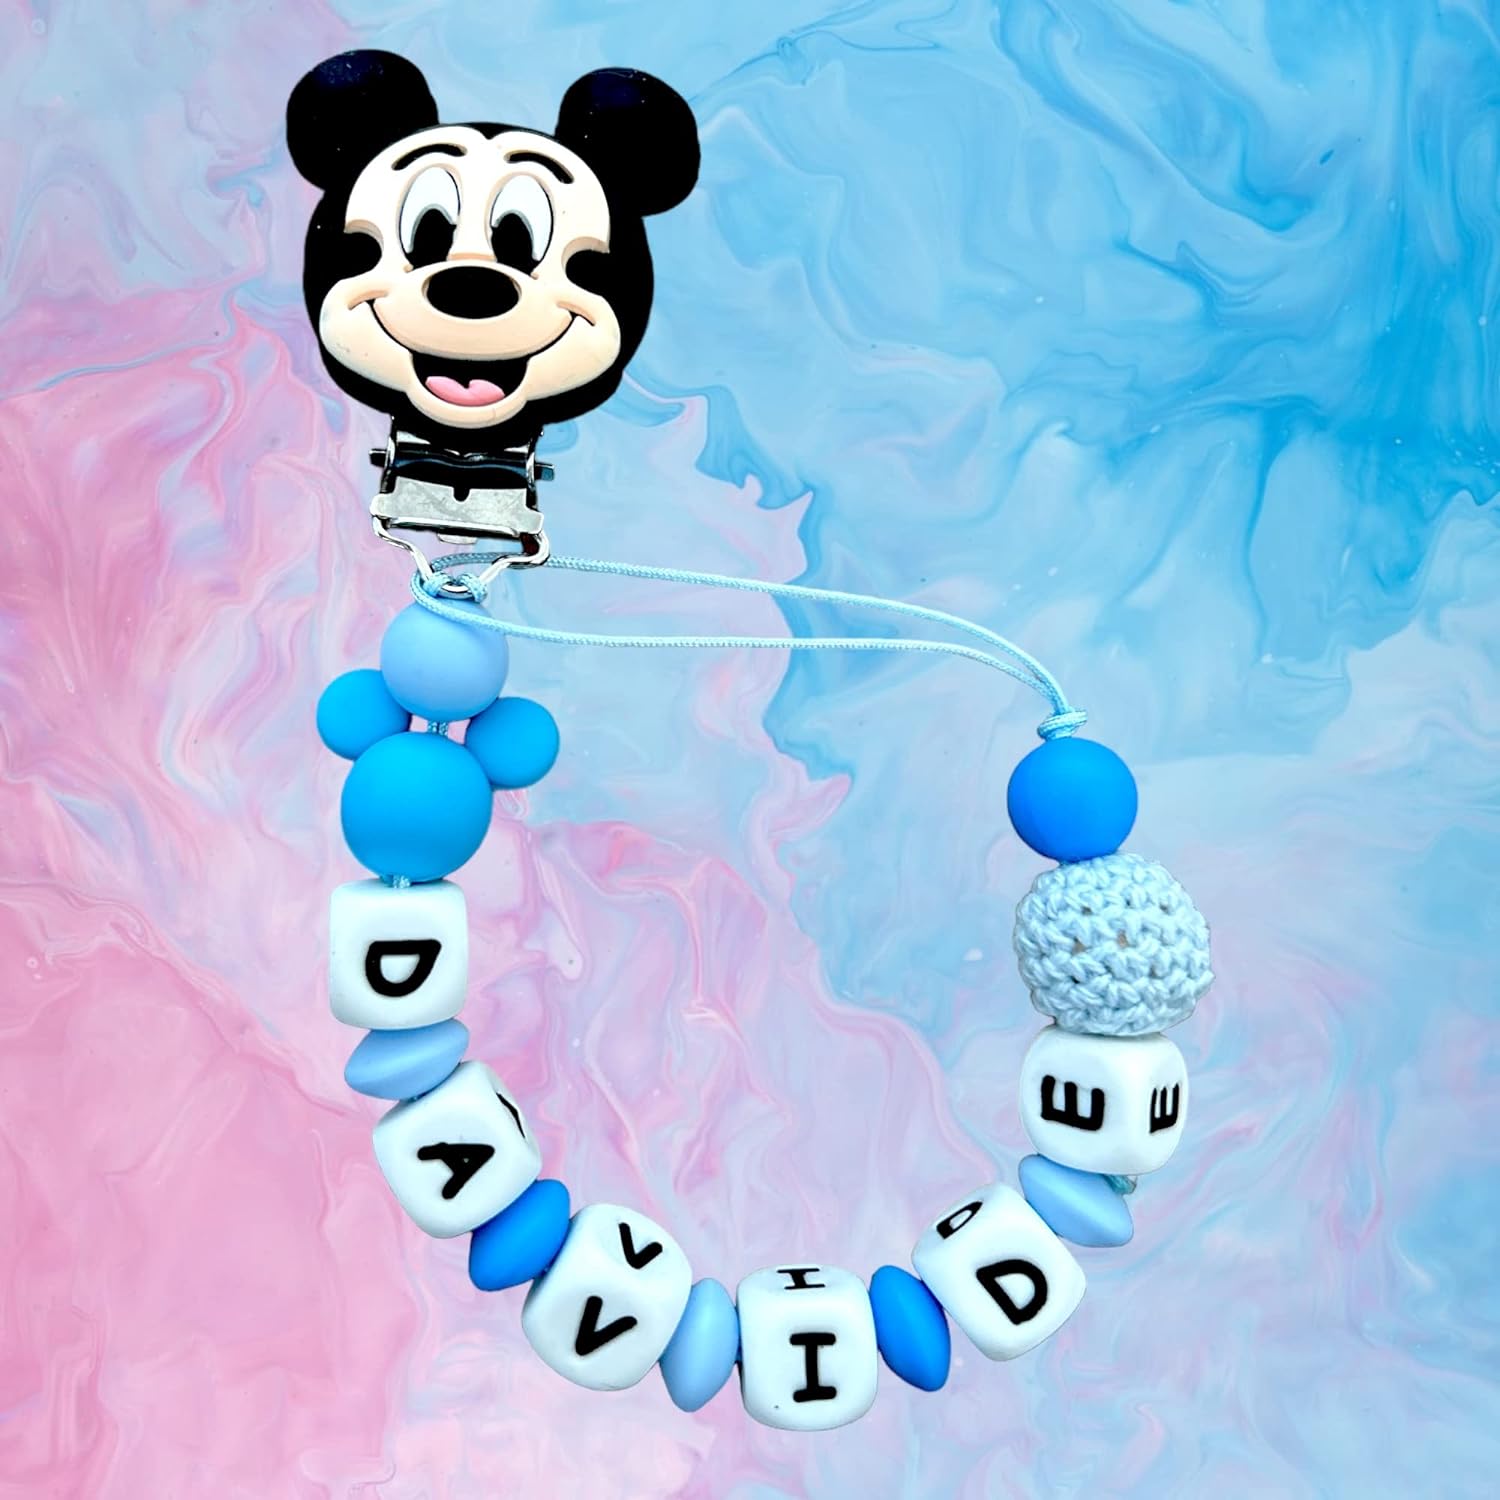 Catenella Portaciuccio - Personalizzata con nome neonato- Catenella con Topolino - Mickey Mouse - Minnie - Winnie The Pooh - Catenella compatibile con Ciuccio MAM